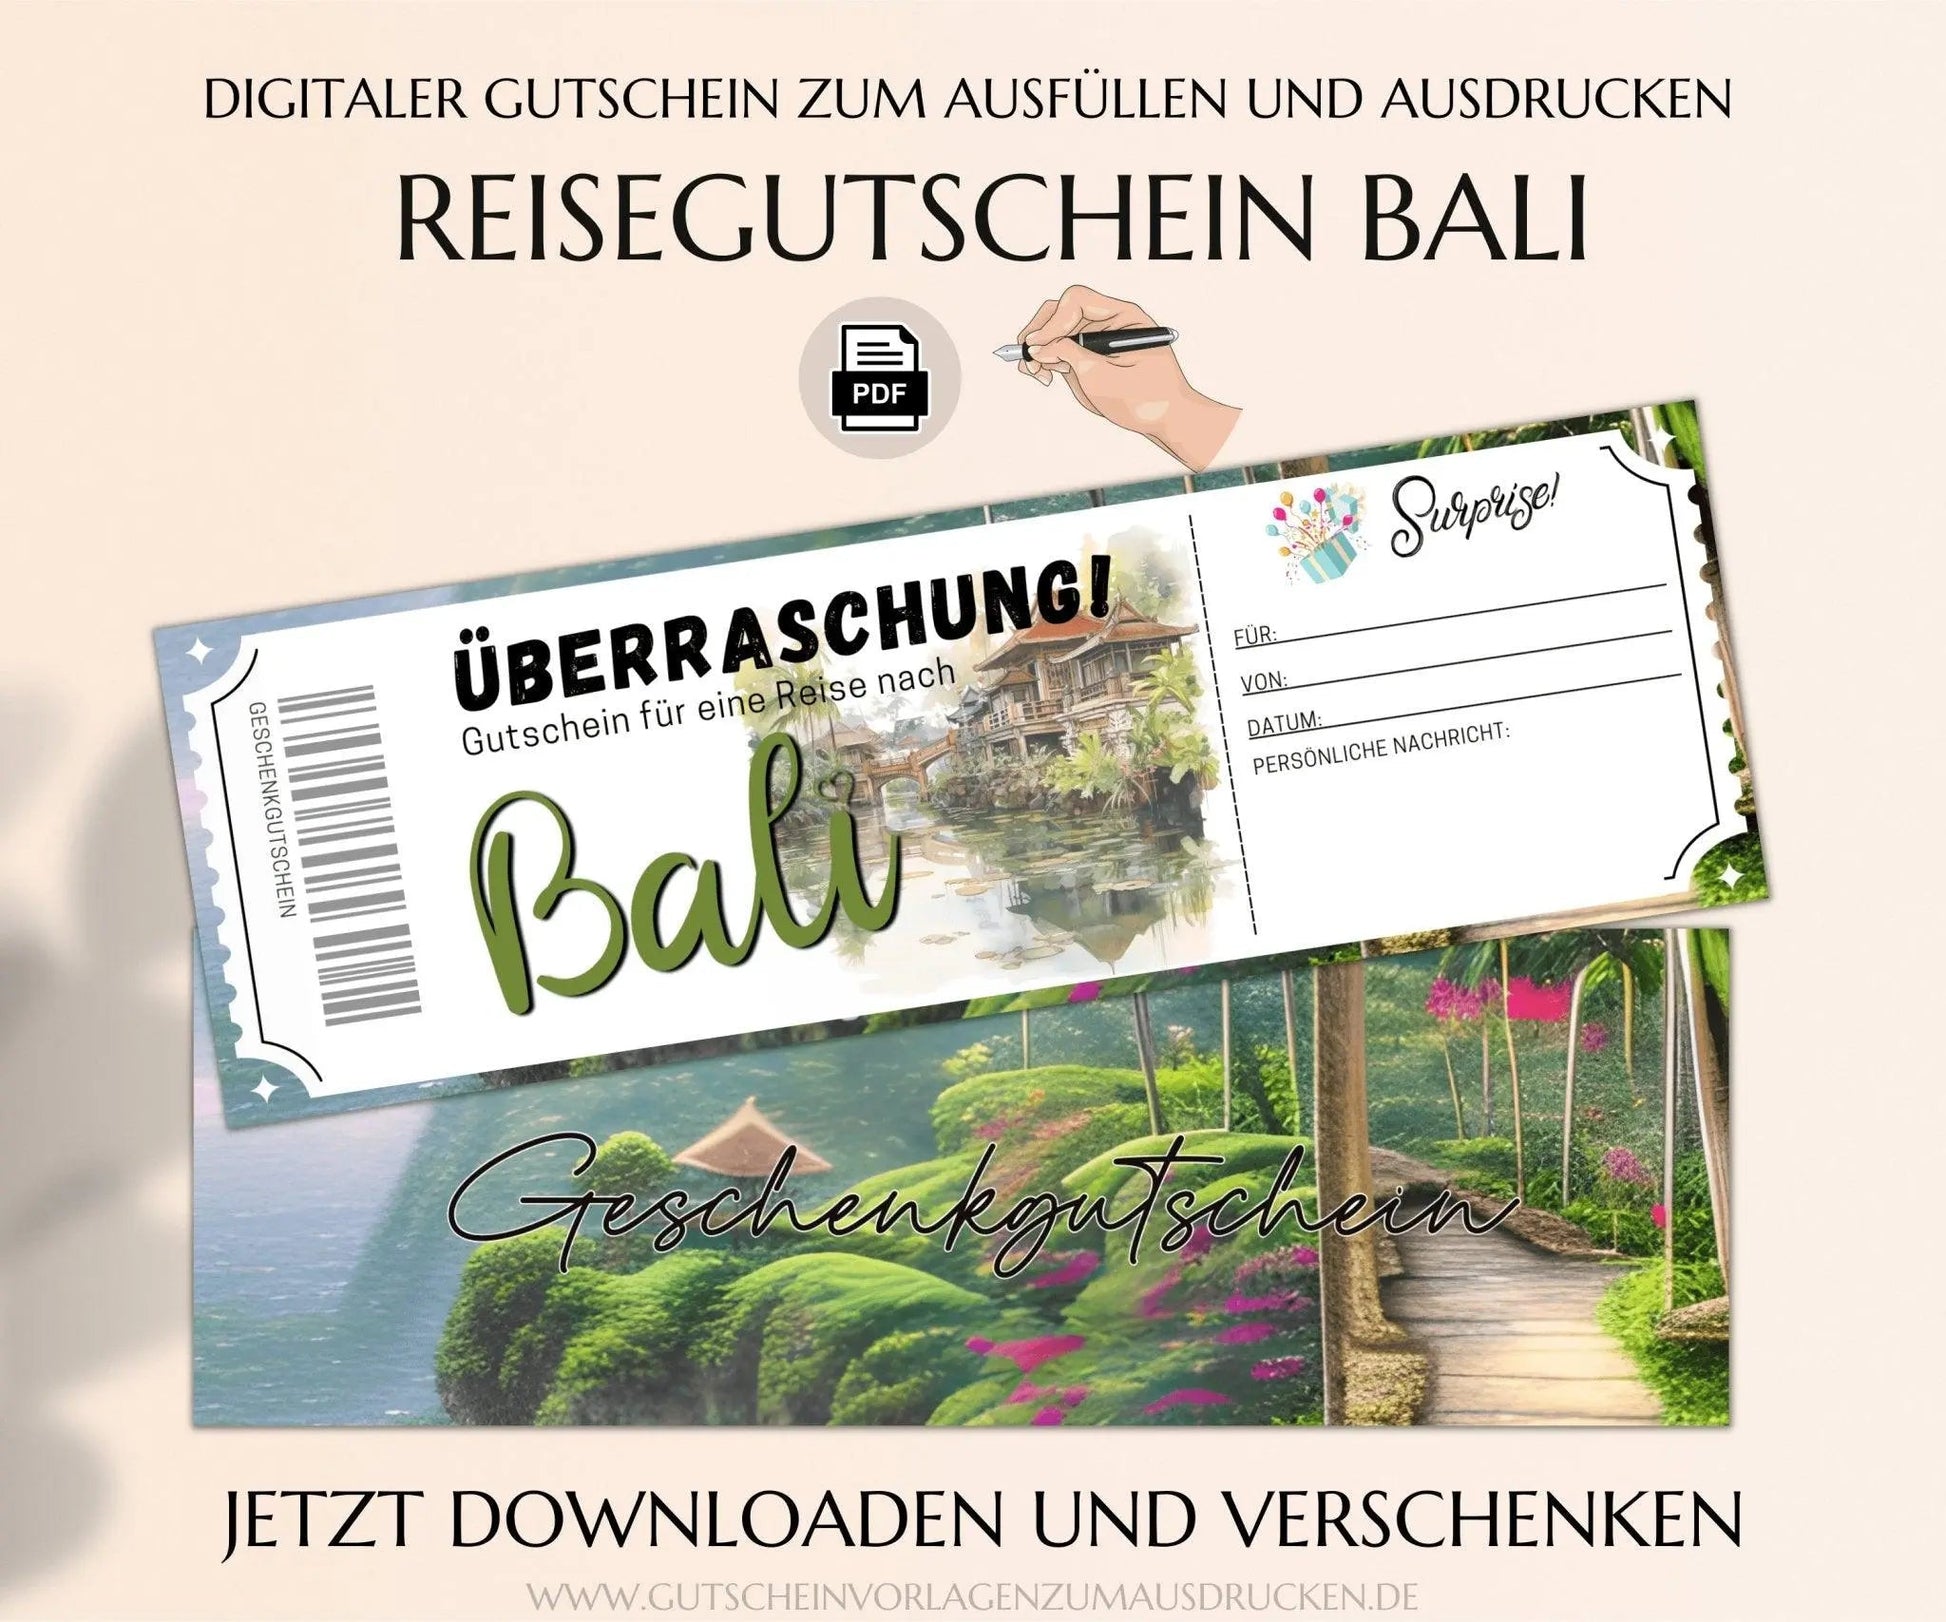 Reisegutschein Bali | Gutscheinvorlage zum Ausdrucken | Gutschein Vorlage Bali Rundreise Urlaub | PDF Download | JSK326 - JSKDesignStudio.de